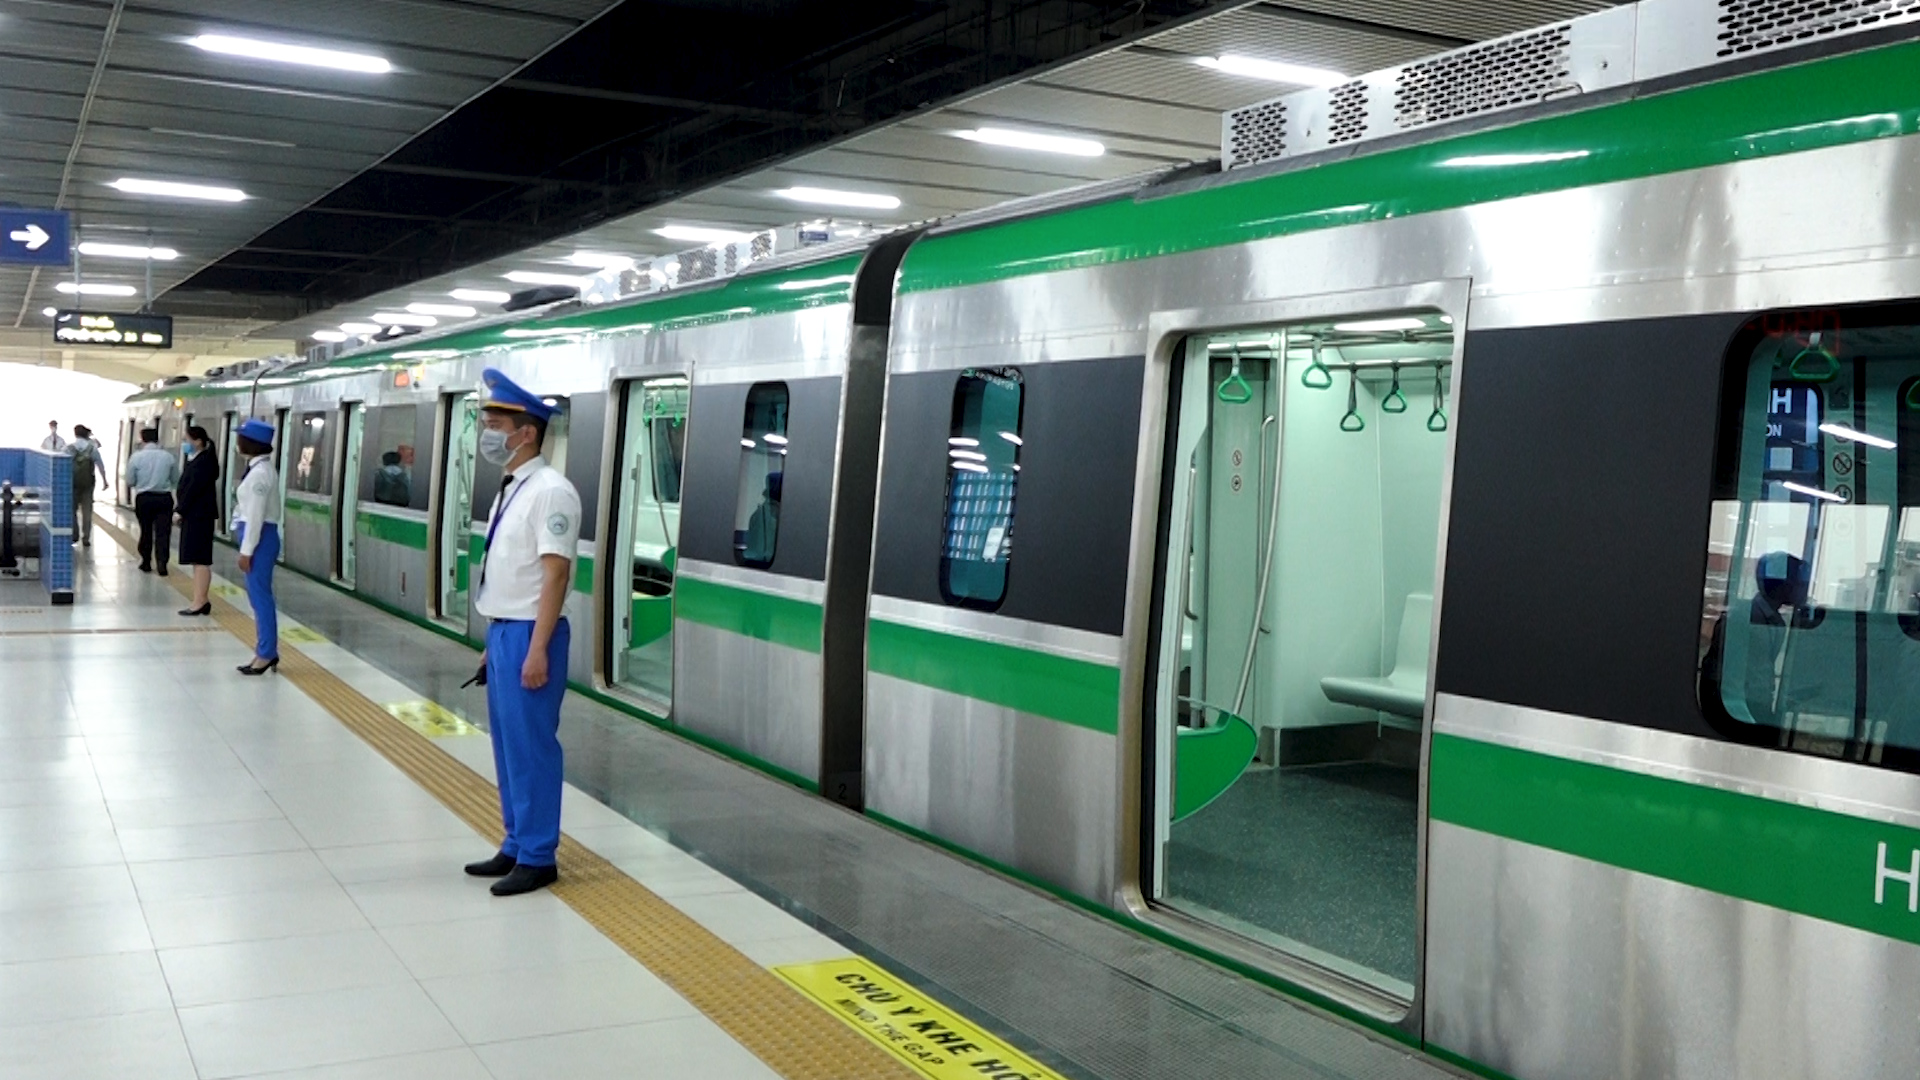 Sau nhiều mong đợi, cuối cùng người dân cũng có thể sử dụng dịch vụ của tuyến đường sắt cao tốc Cát Linh - Hà Đông.